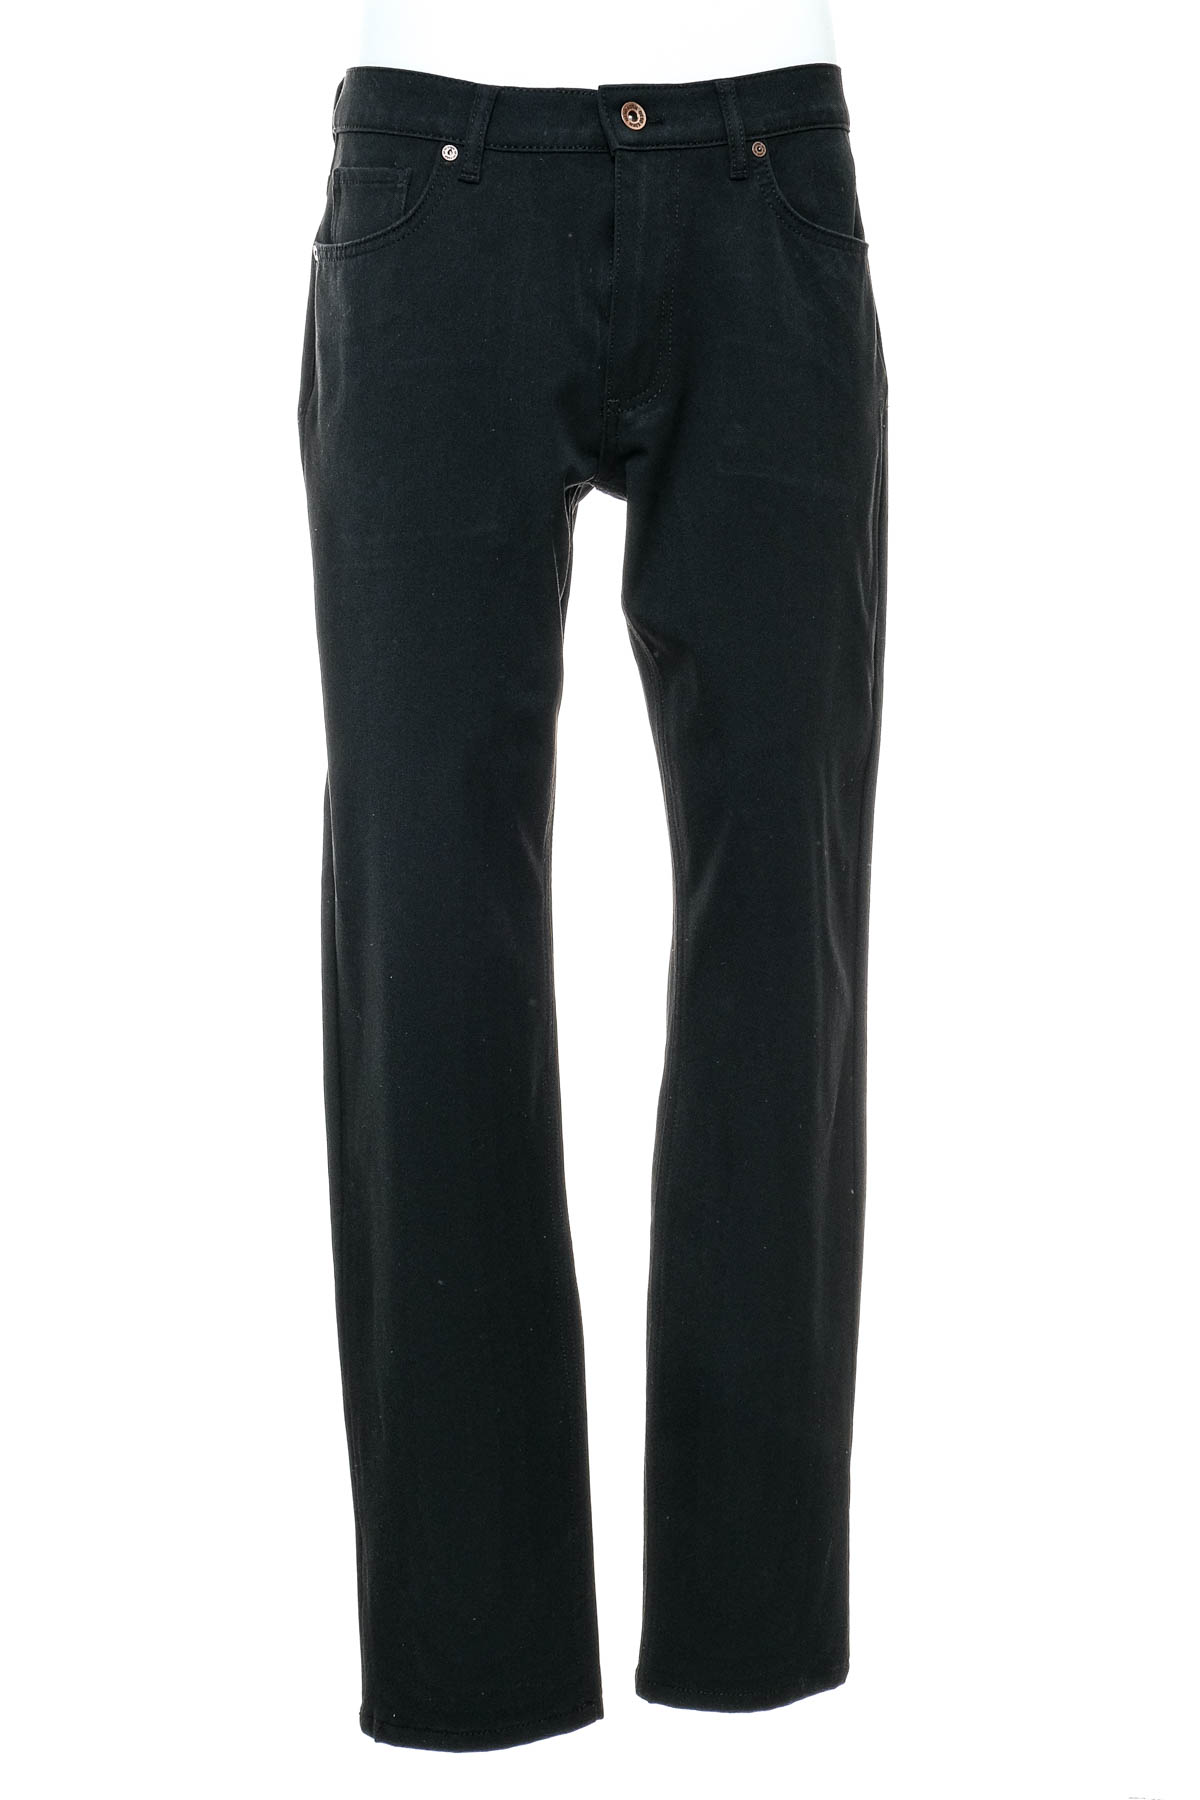 Jeans pentru bărbăți - Otto Kern - 0